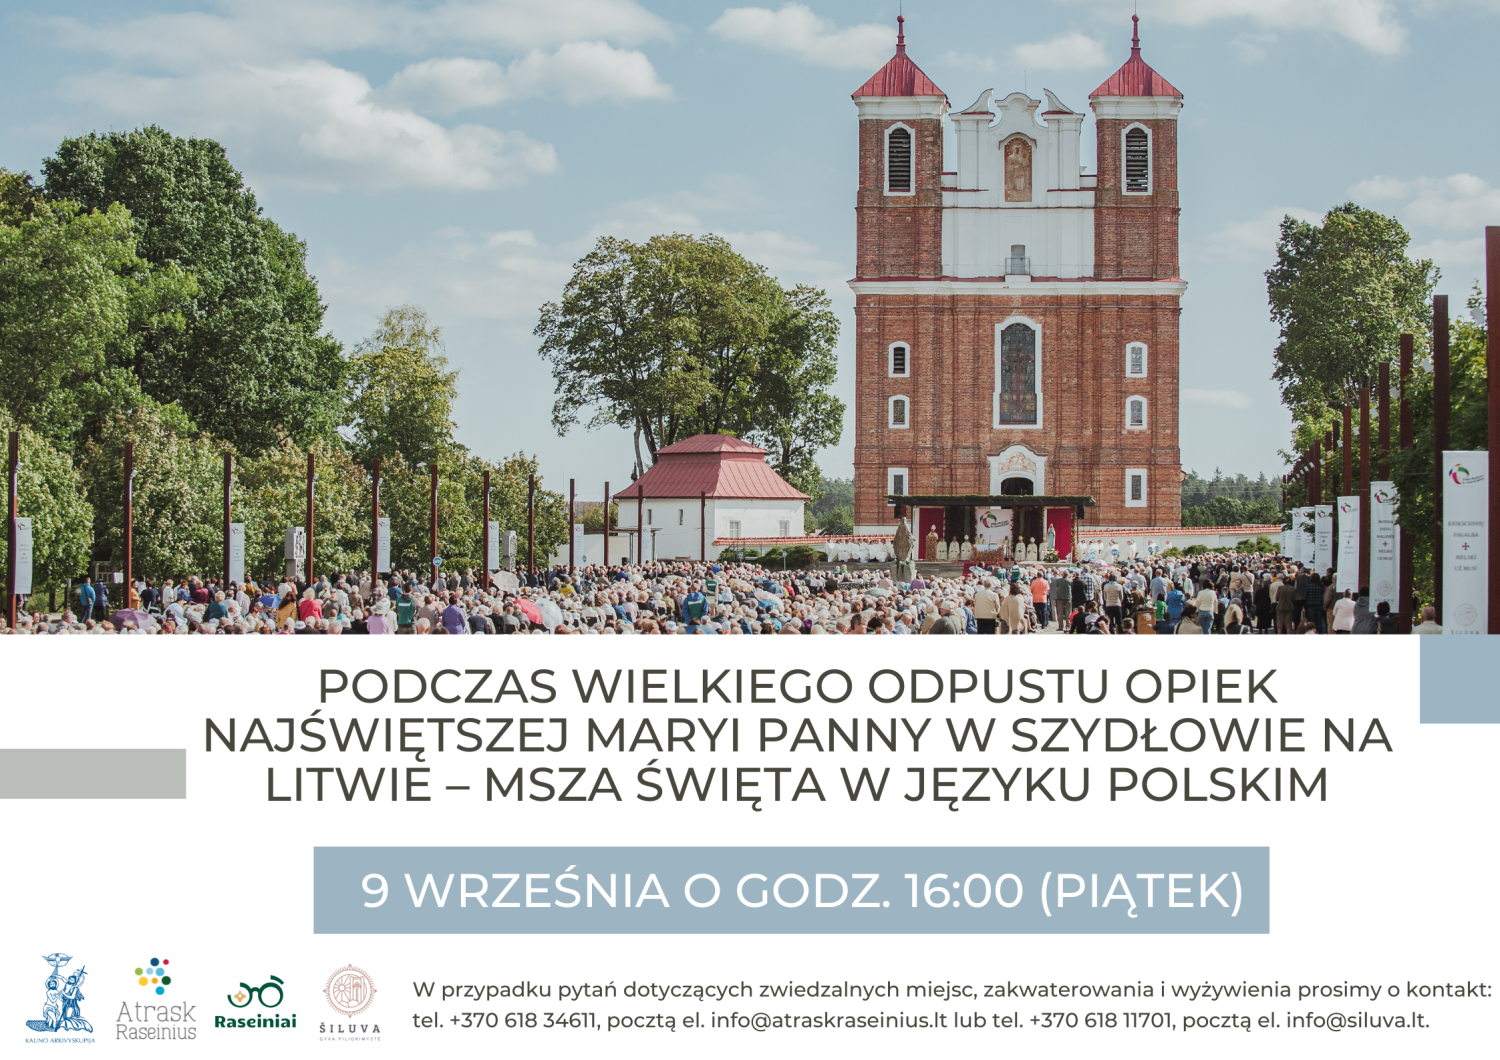 Afisz z zaproszeniem na mszę świętą w języku polskim w Szydłowie.